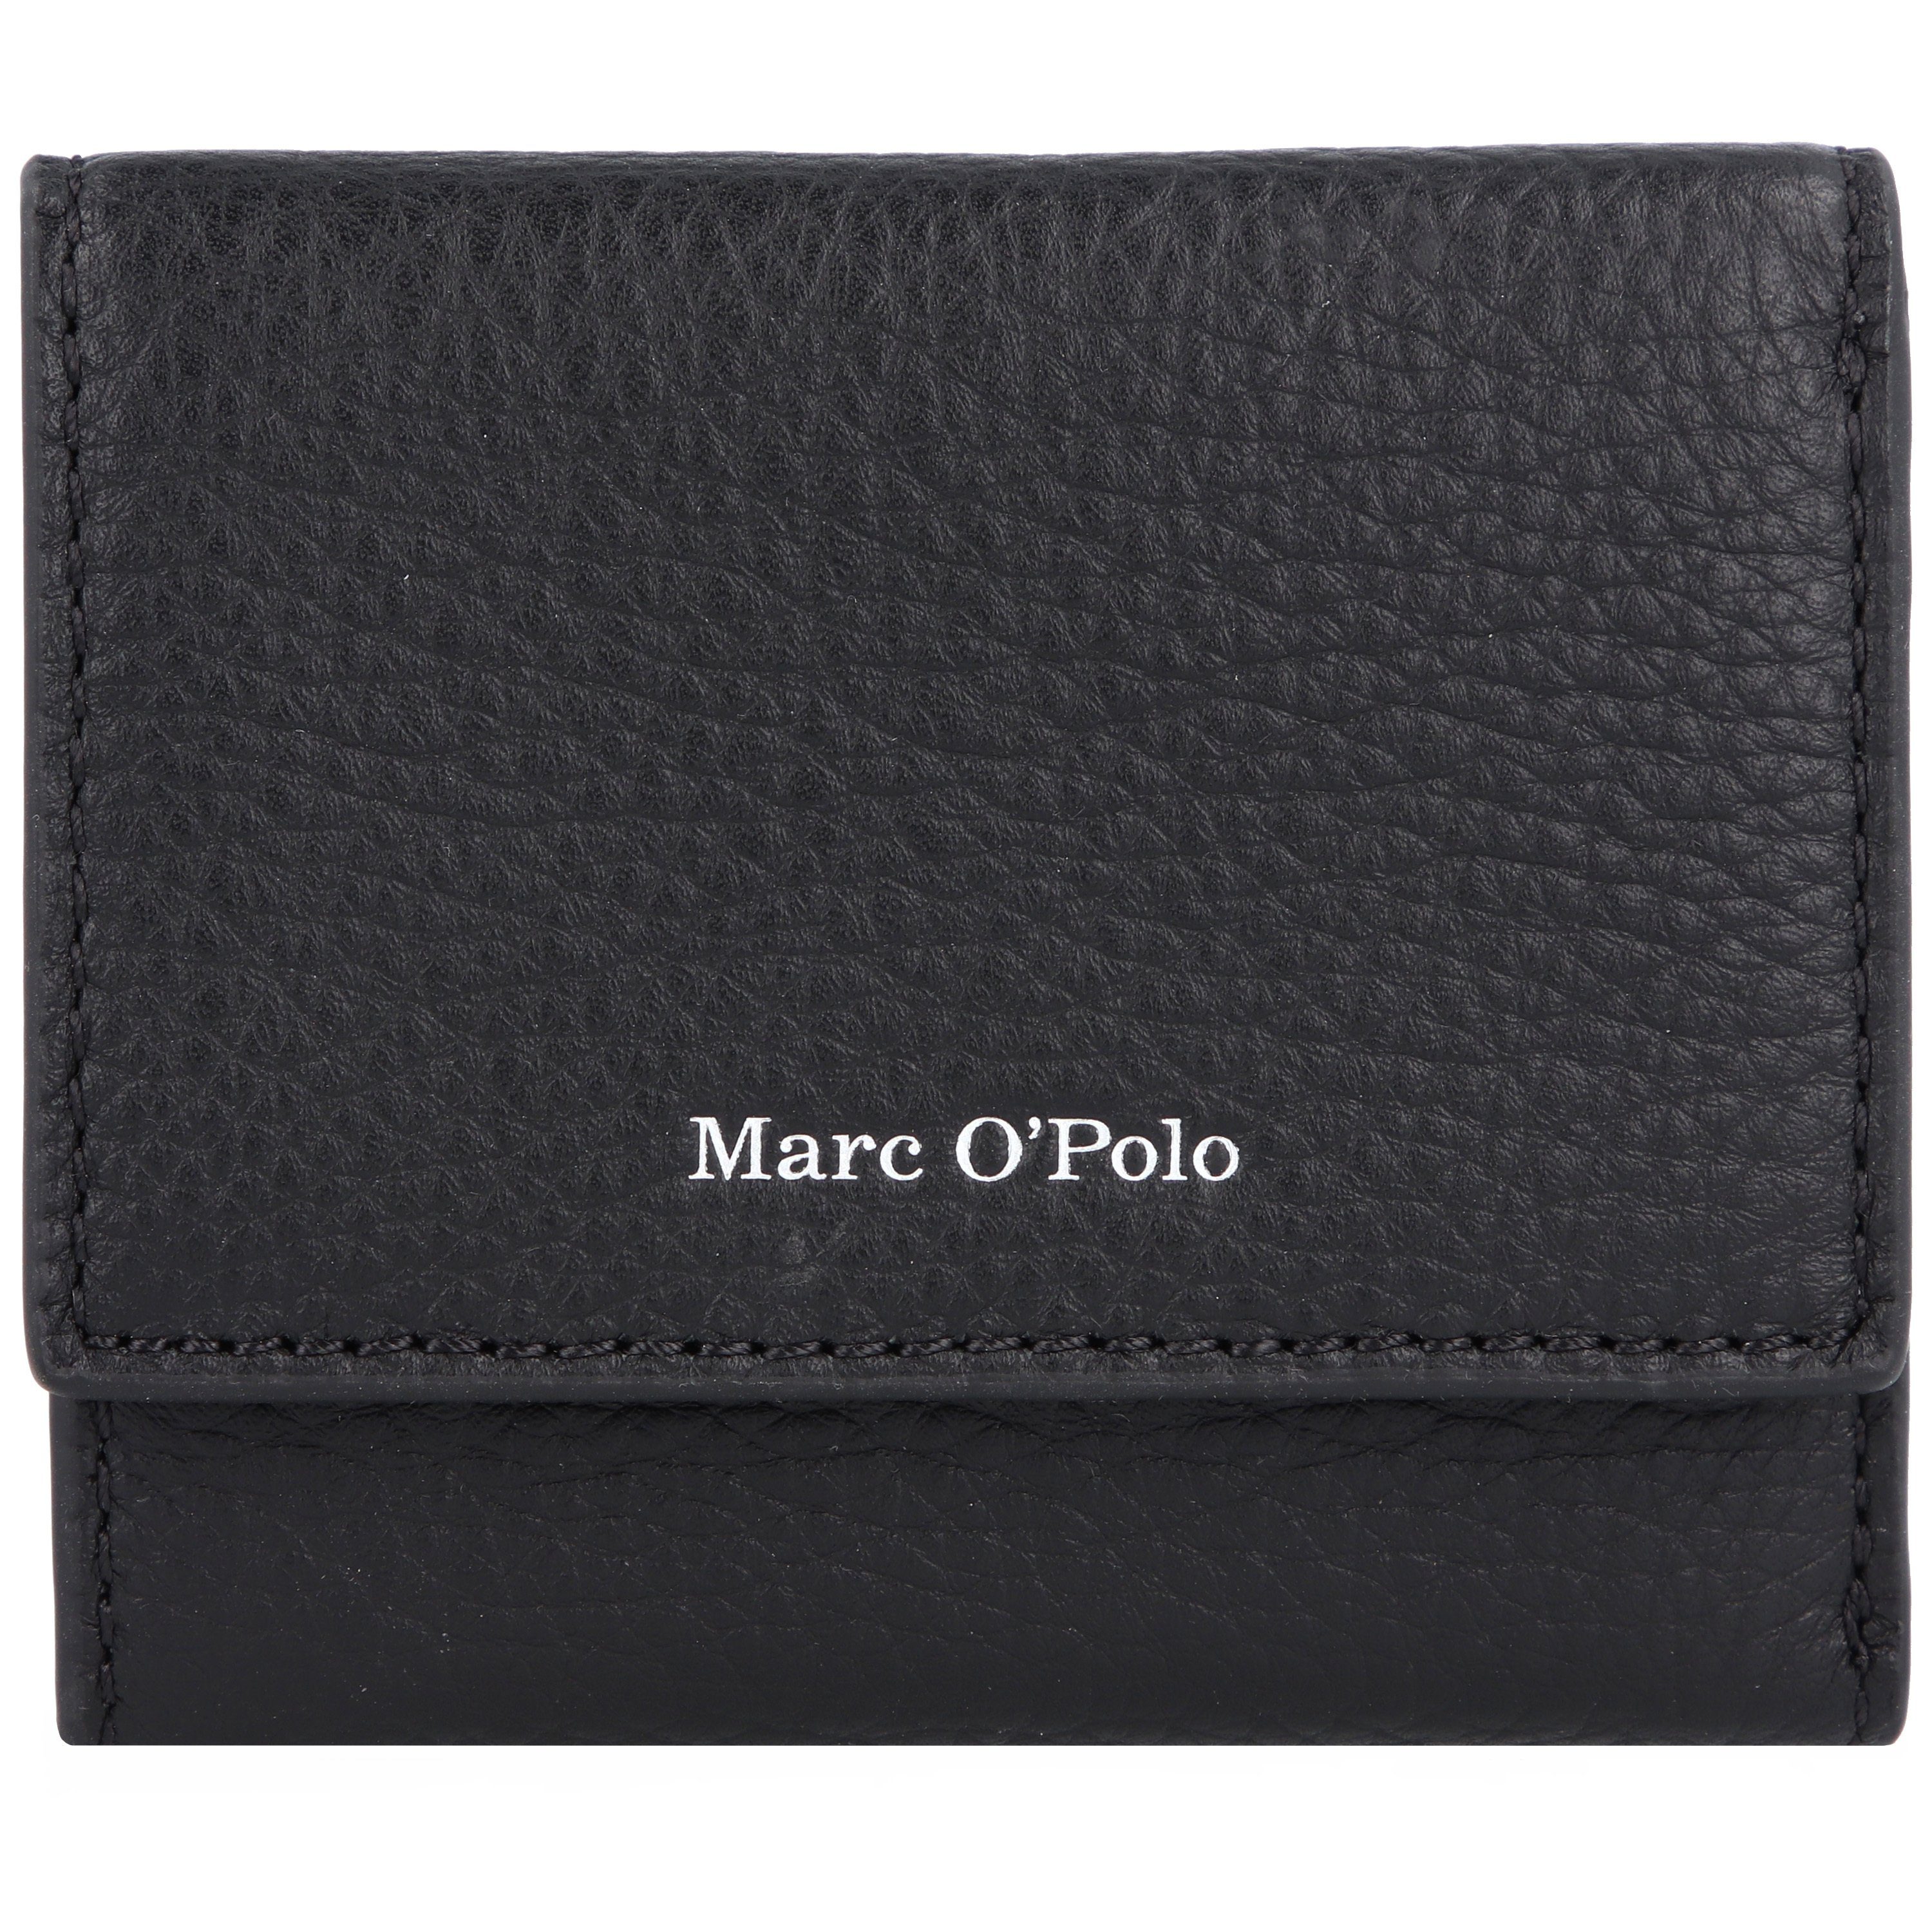 Marc O'Polo Geldbörsen online kaufen | OTTO